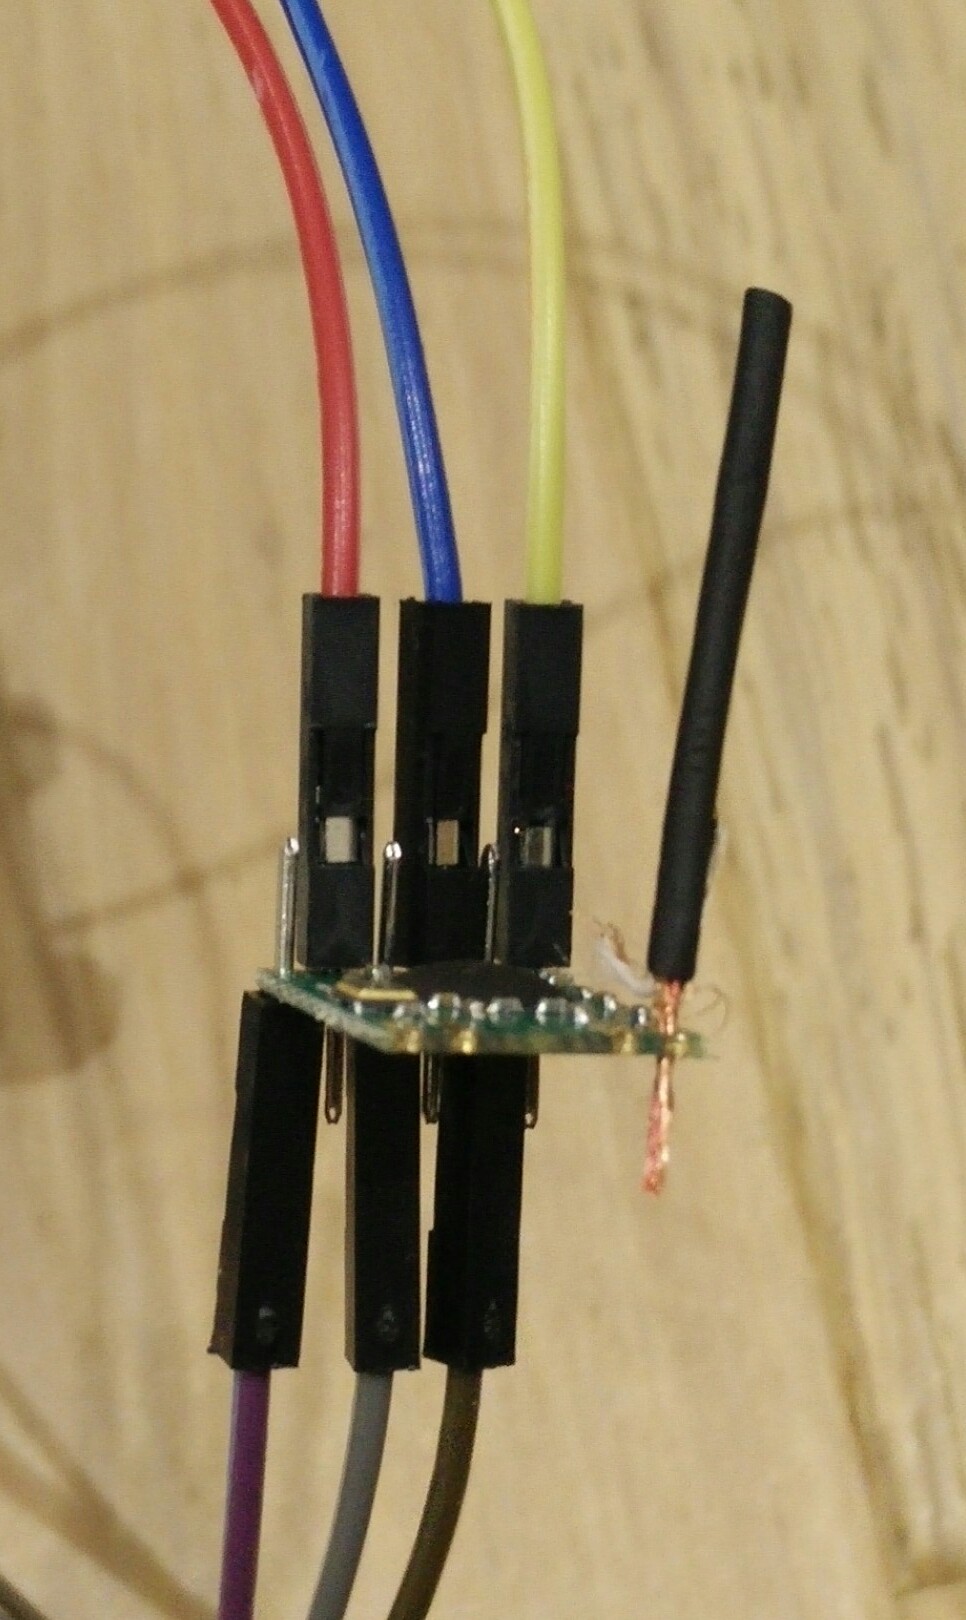 CC2500 wiring